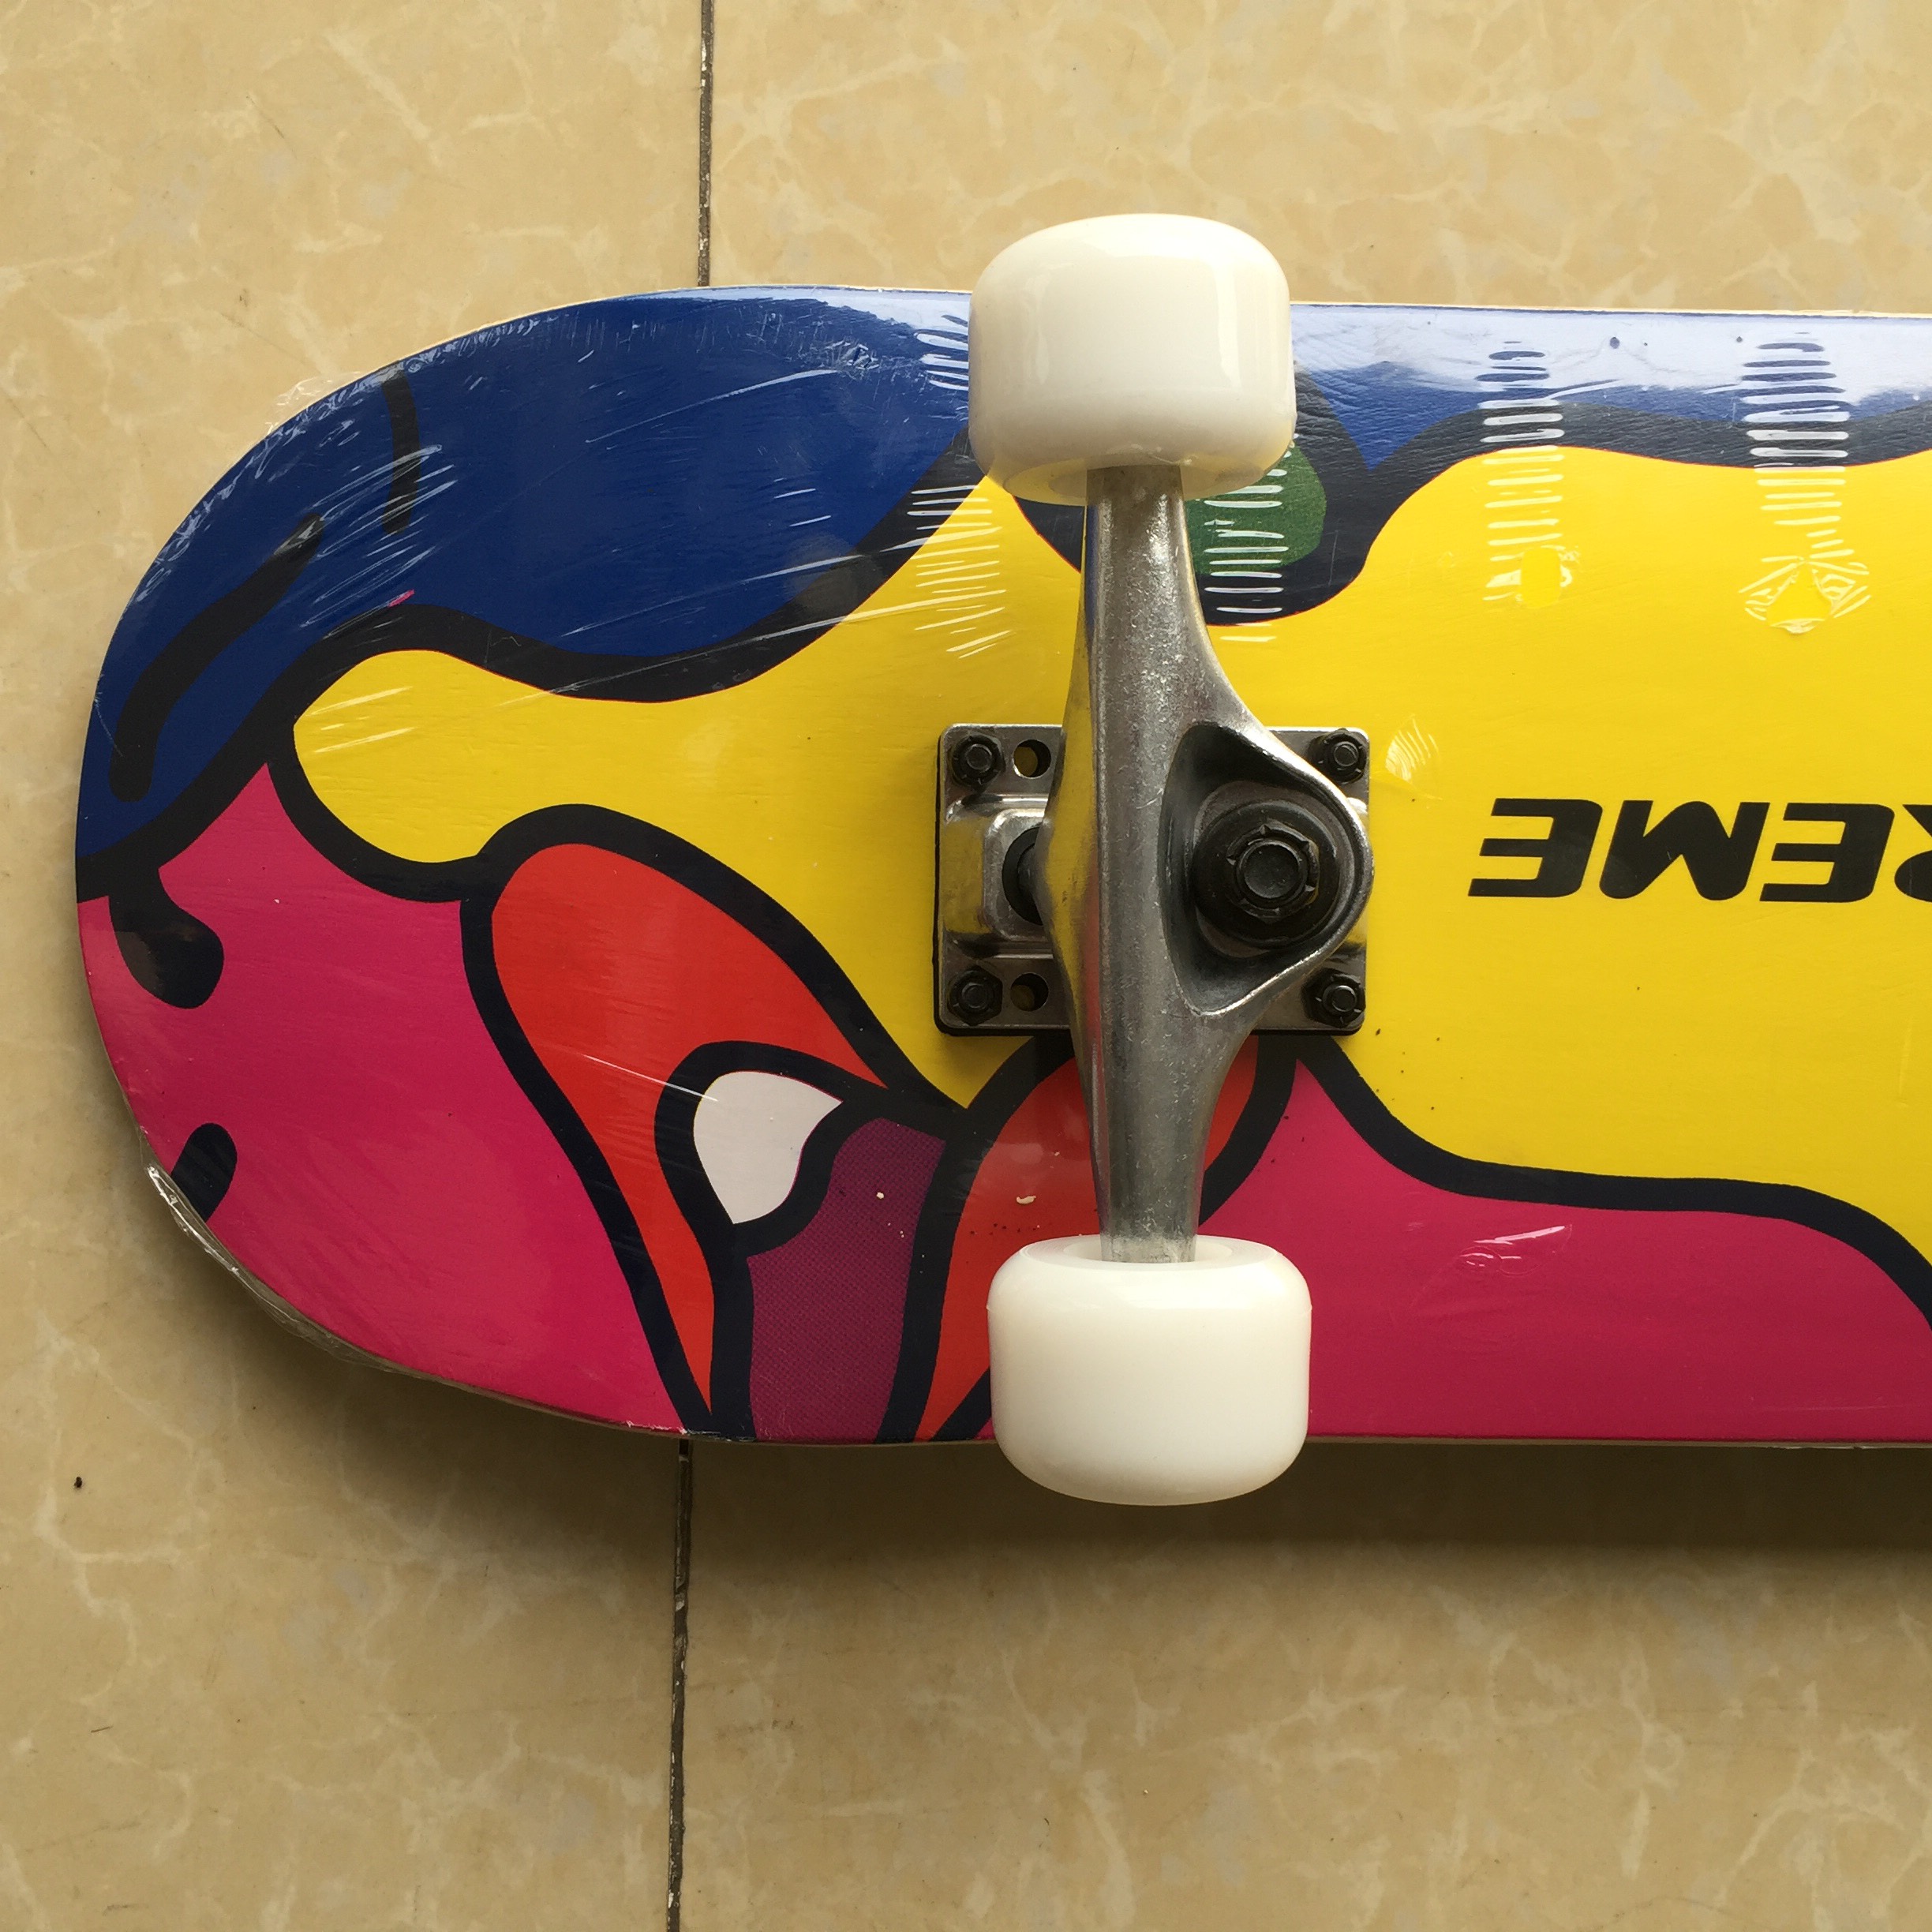 Ván trượt Skateboard bánh PU BABY PLAZA W3108C-2